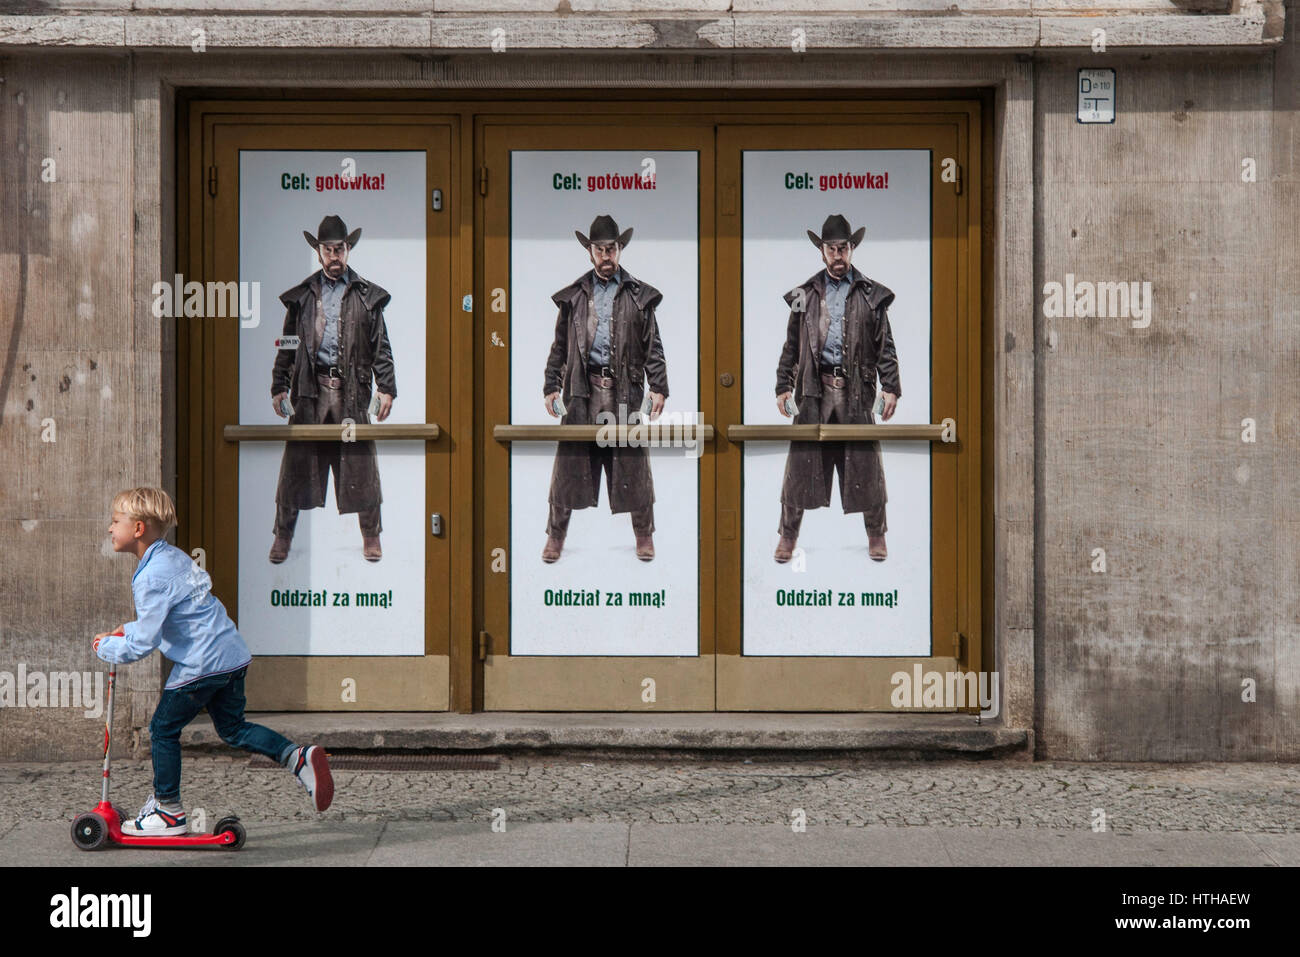 Garçon sur un scooter, traînent dans les rues, 'Cible : l'argent ! Suivez-moi !" les troupes de l'Acteur Chuck Norris affiche publicitaire pour Bank Zachodni WBK à Wroclaw, Pologne Banque D'Images